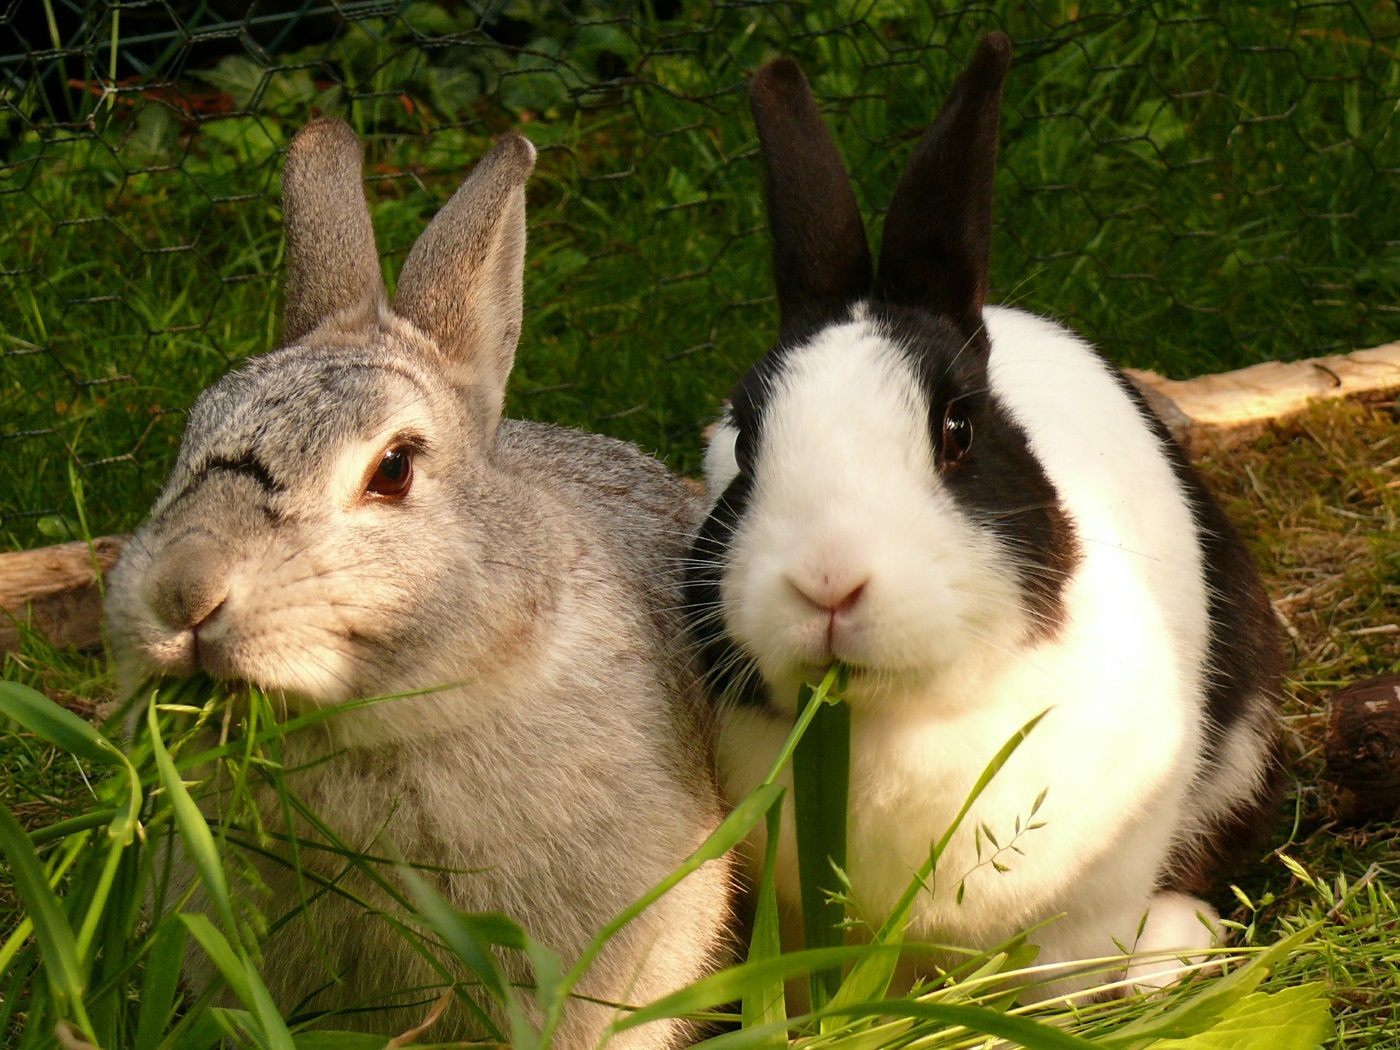 Kaninchengruppe: Männchen und Weibchen - Was passt zusammen?